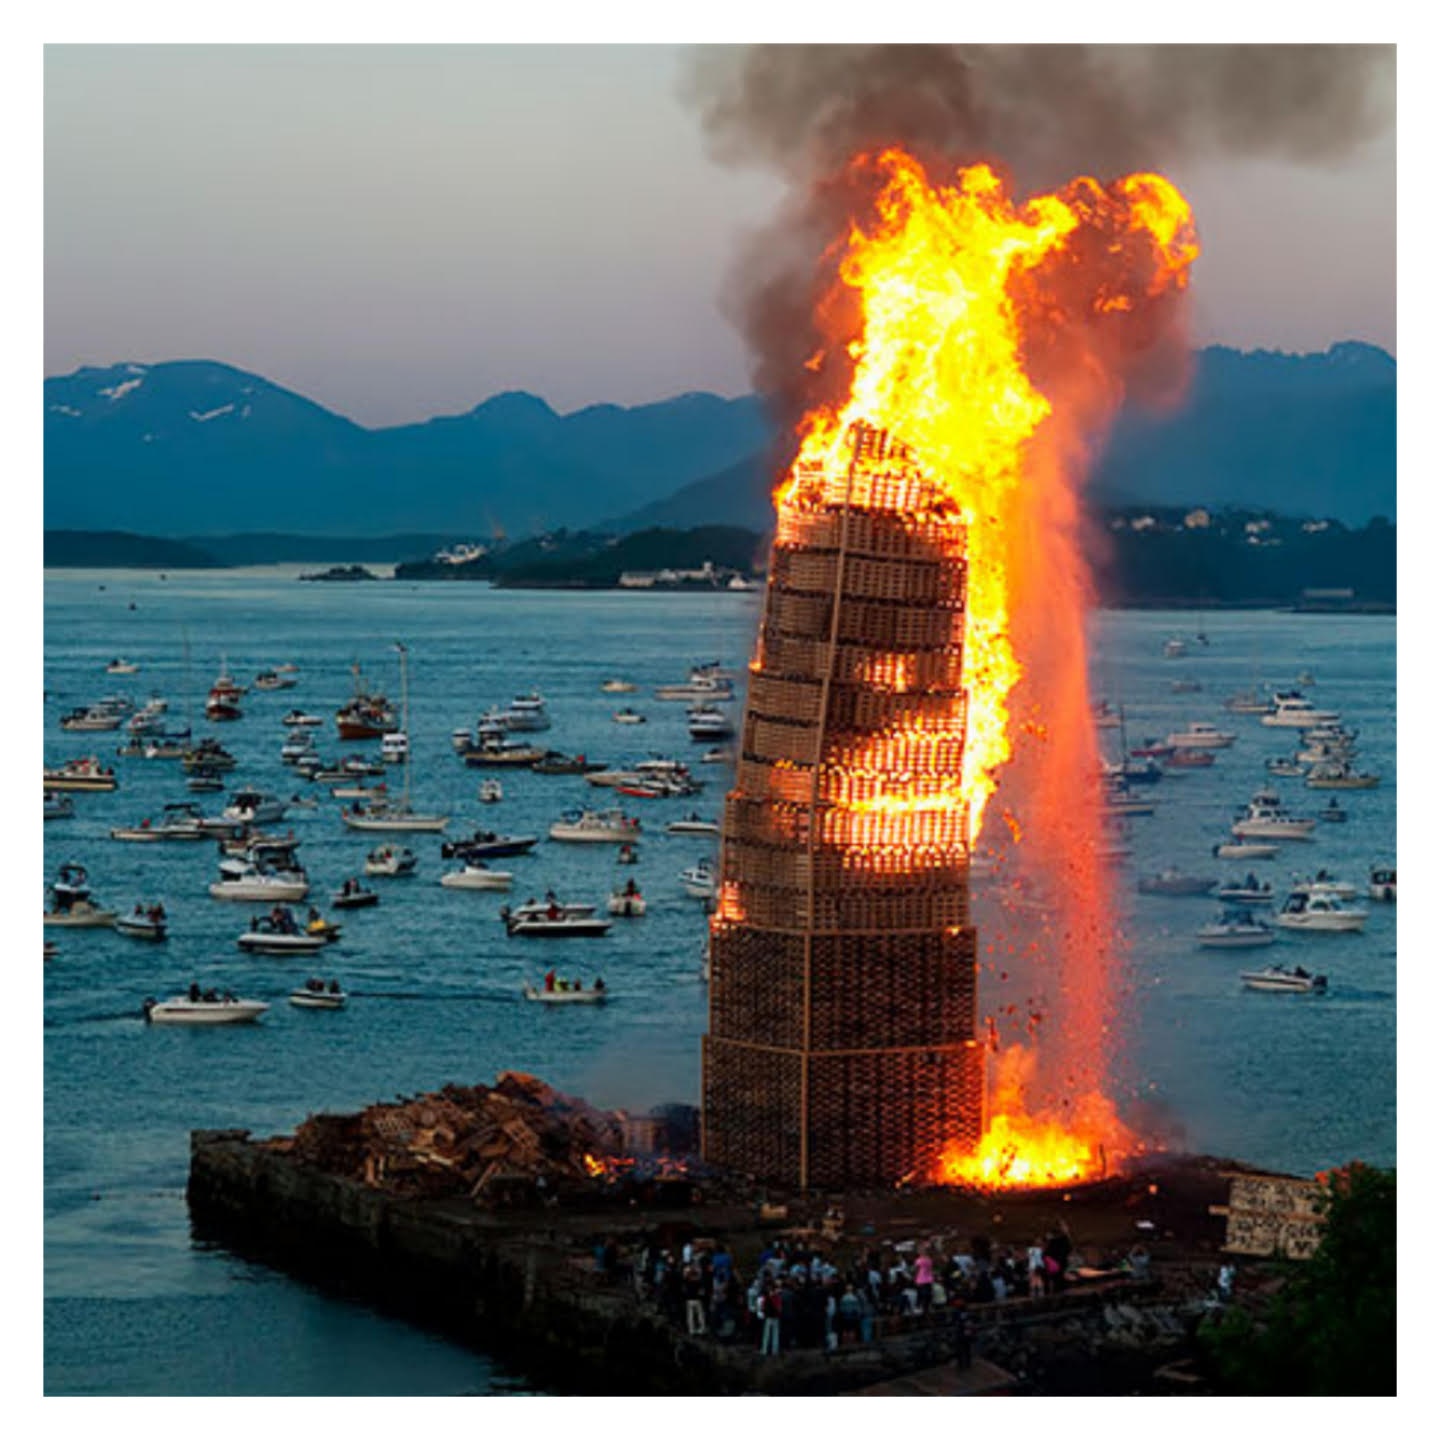 The largest bonfire in Norway in celebration of Slinningsbålet